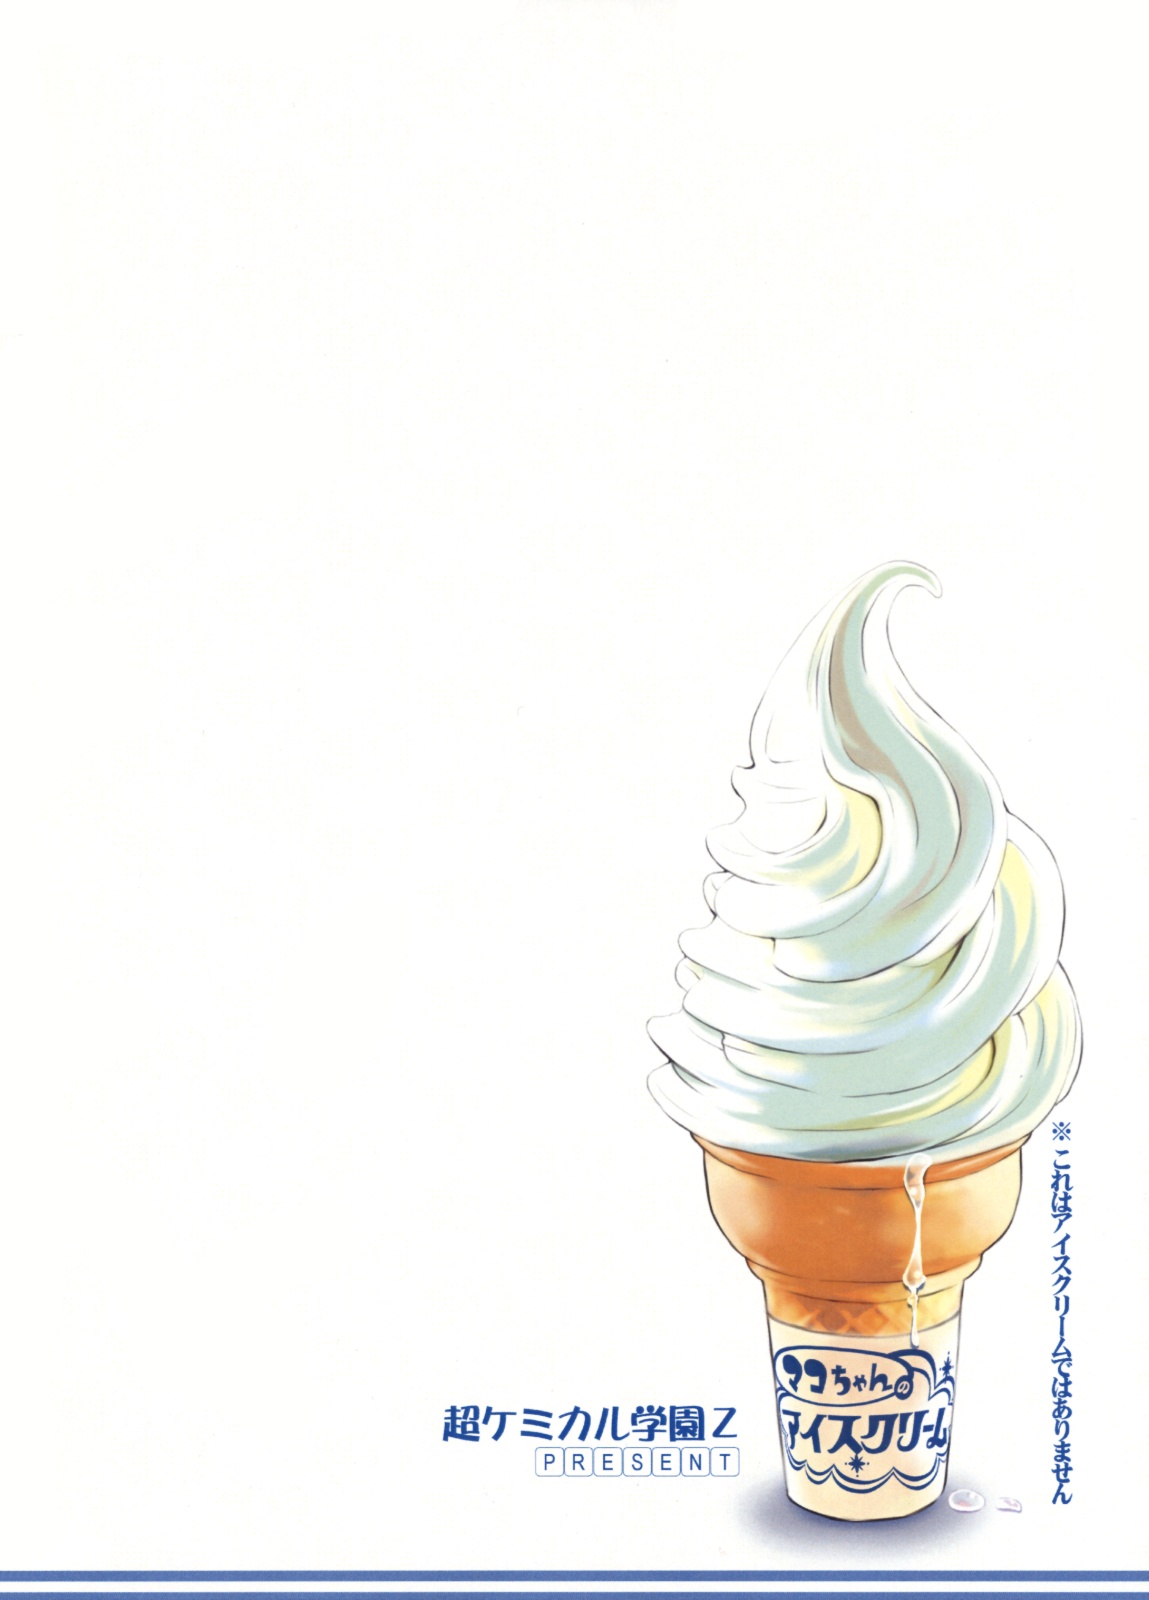 [超ケミカル学園Z (幸瀬になる, よさげよしかず)] マコちゃんのアイスクリーム (みなみけ)